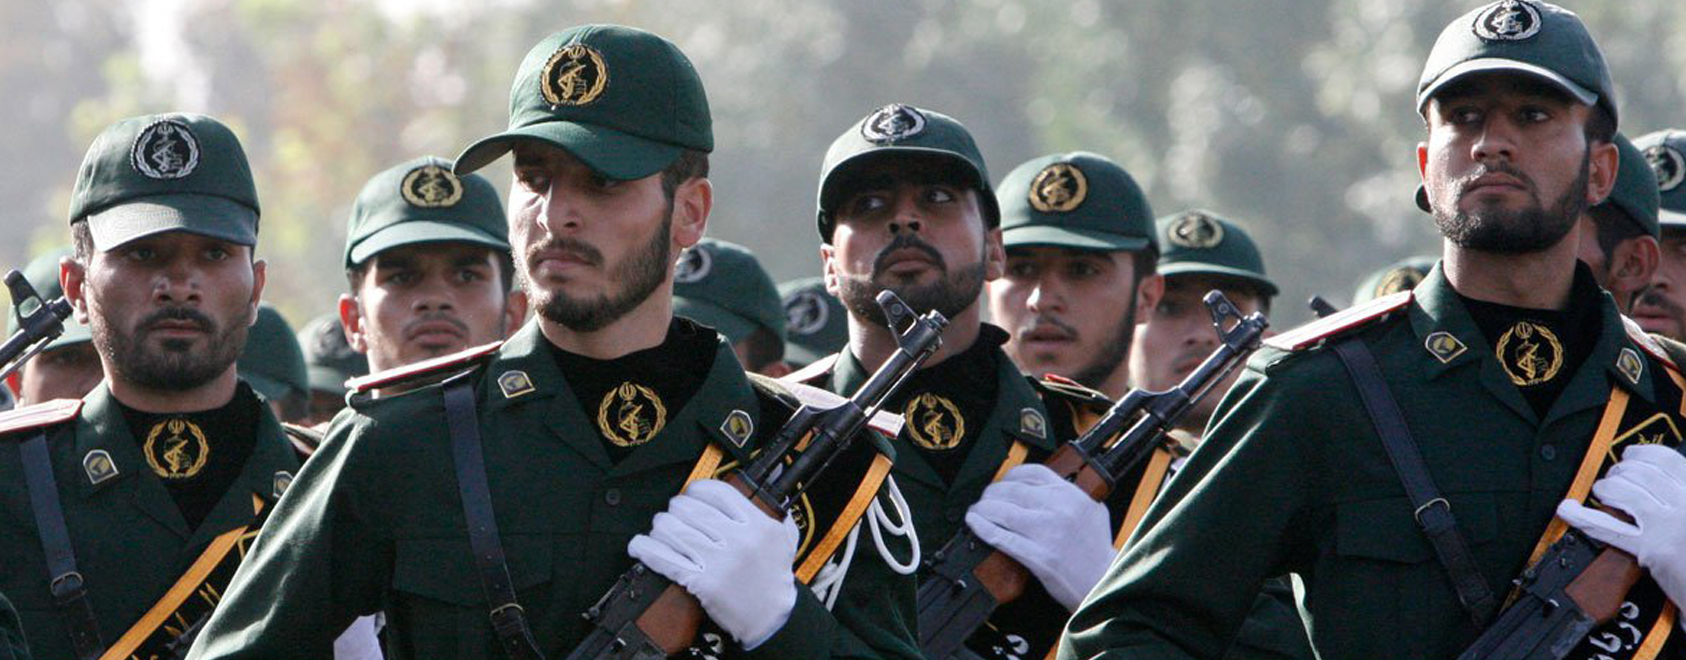 Ιράν: «Η παραίτηση Σ. Χαρίρι είναι ένα νέο σενάριο για την πρόκληση εντάσεων στον Λίβανο και στην περιοχή»